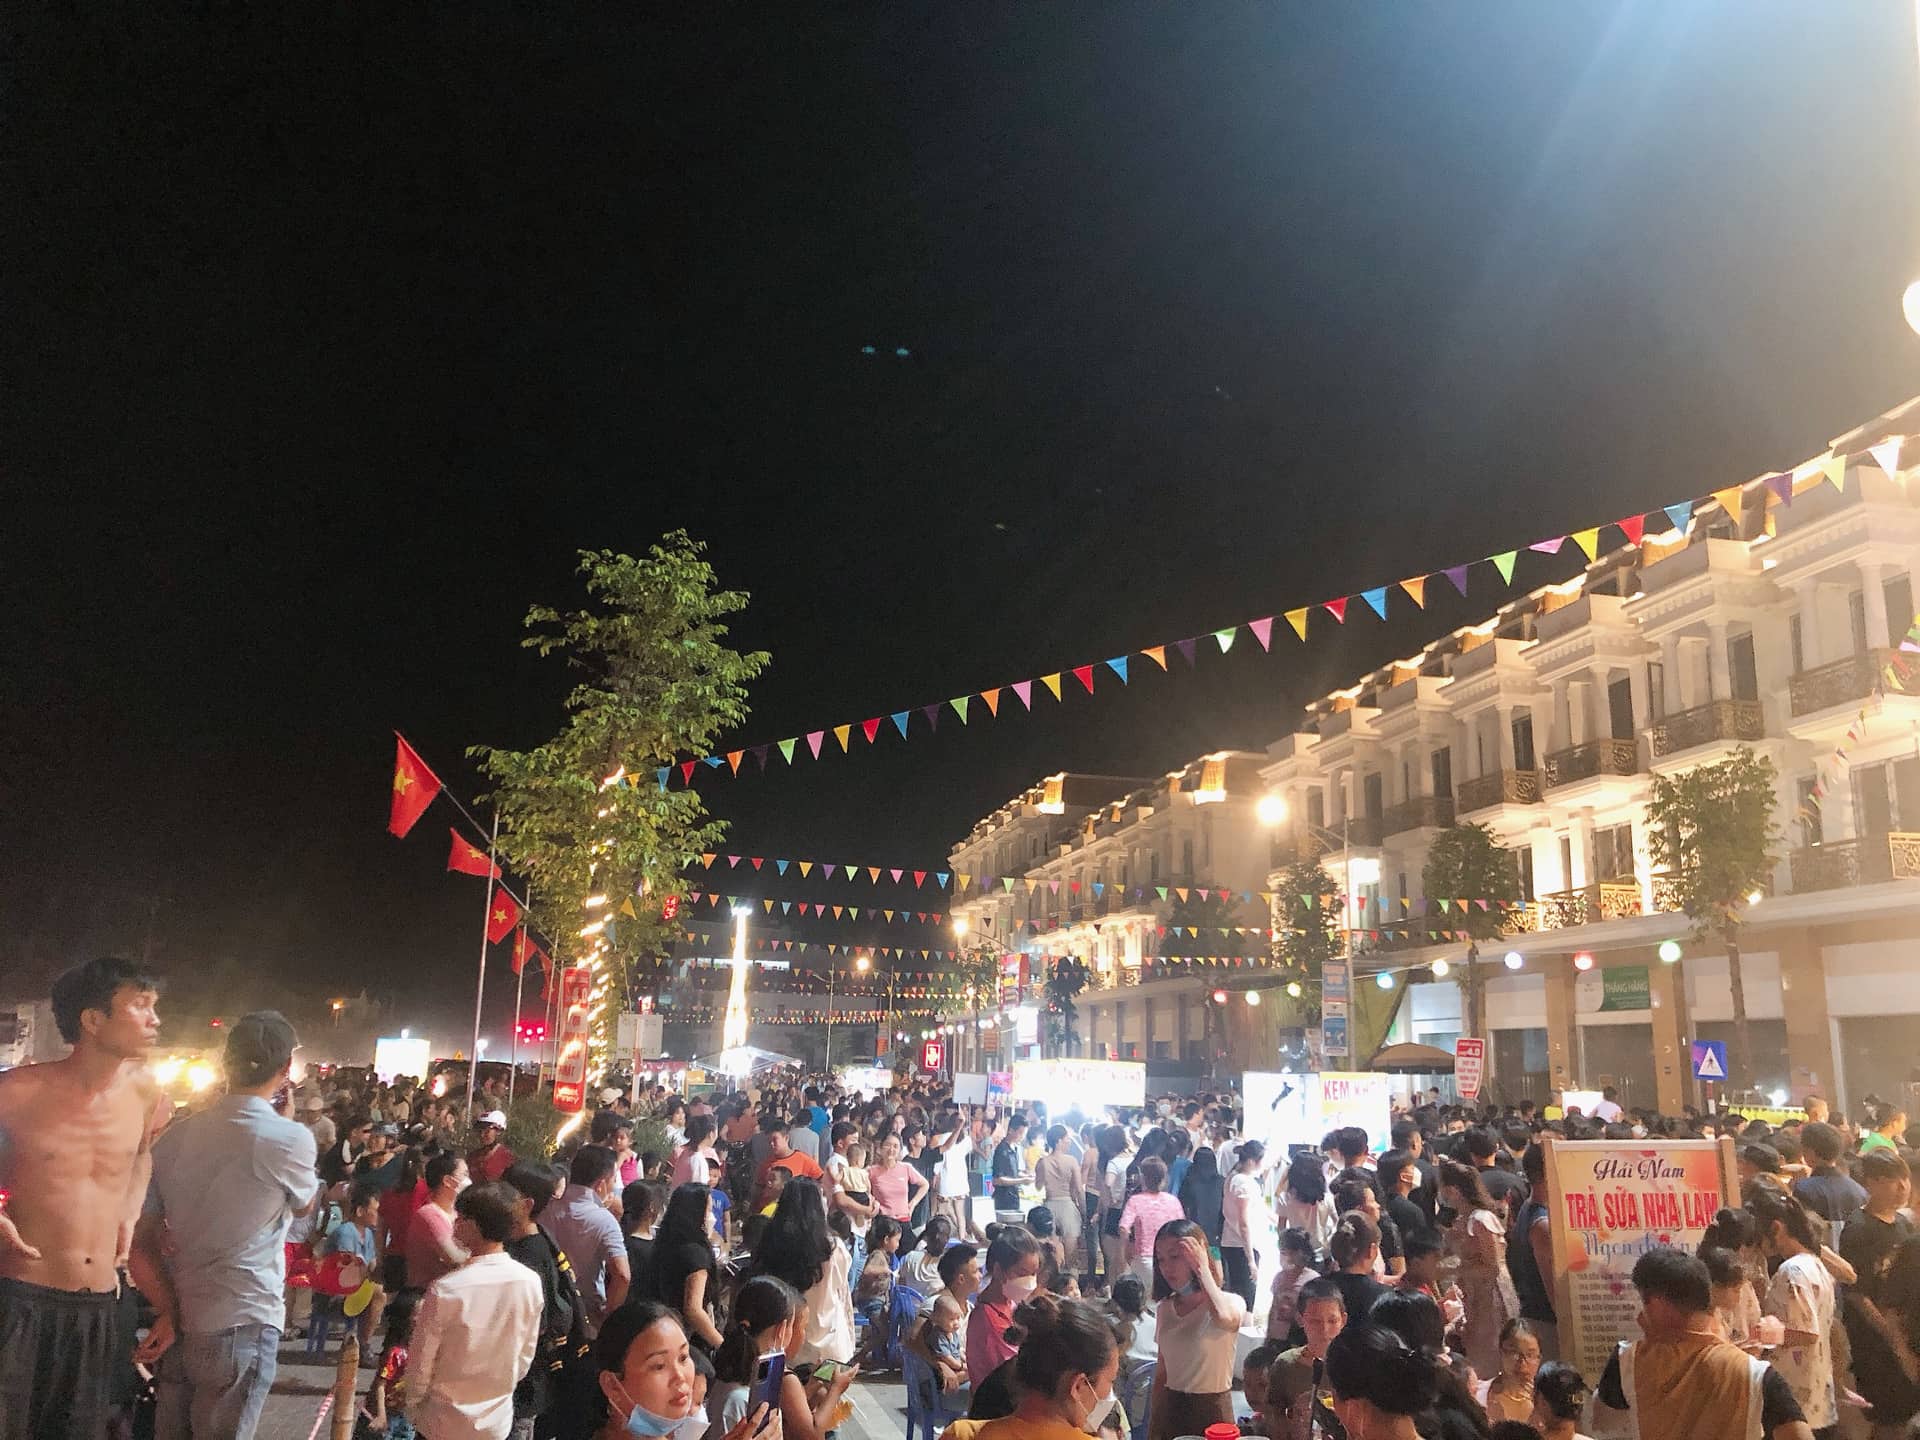 Lần đầu tiên Đô Lương có chợ đêm và điểm đi bộ thoáng rộng là sự kiện khá đặc biệt đã thu hút rất nhiều du khách và người dân đến tham quan, mua sắm.